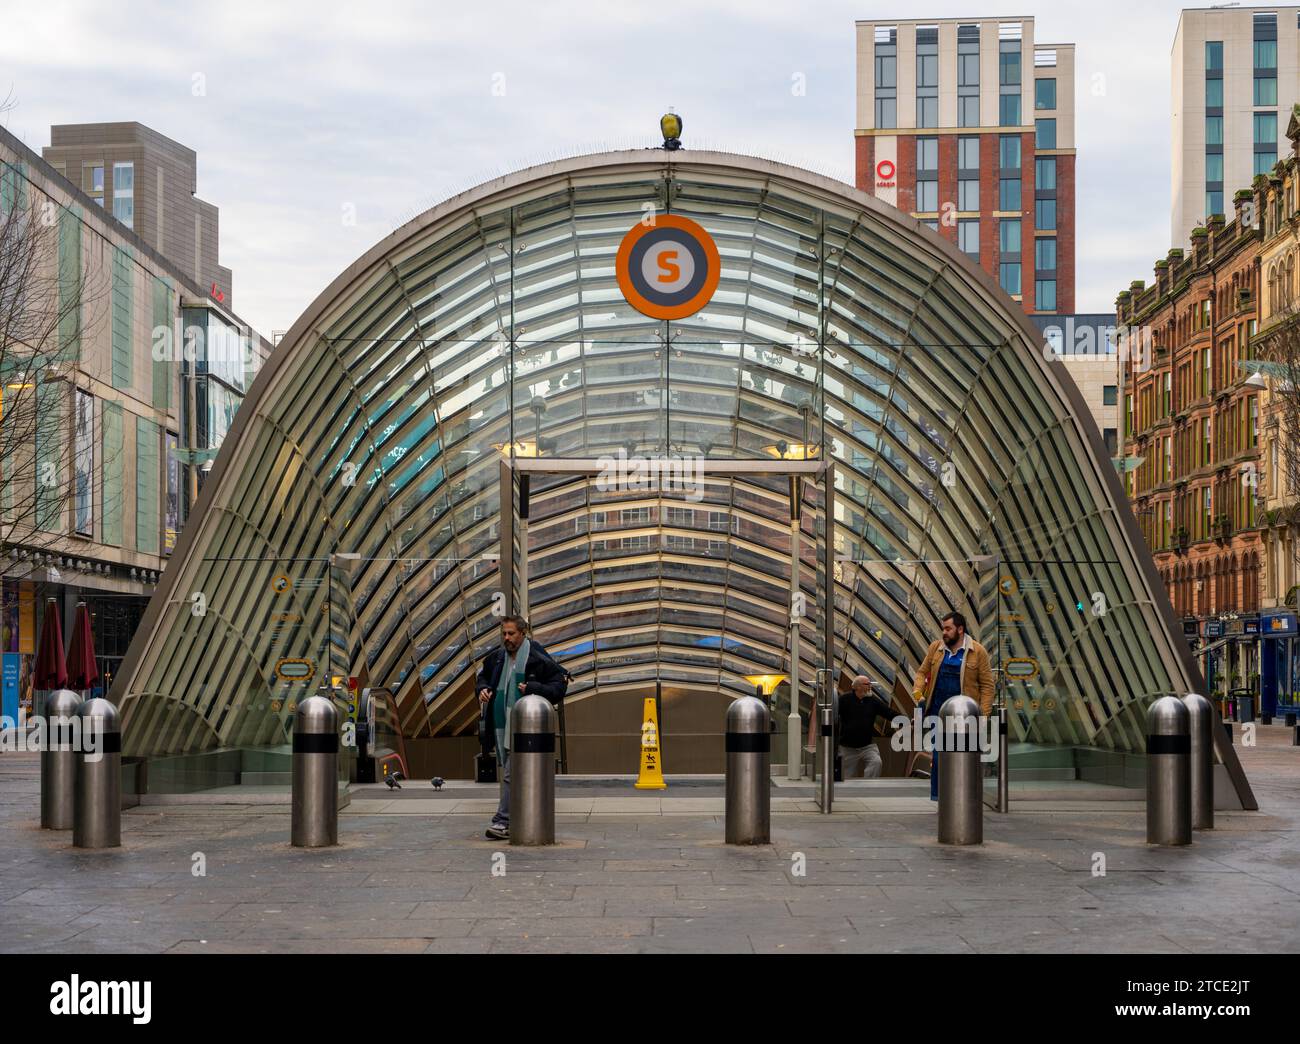 L'architecture frappante de la station de métro St.Enoch, Glasgow Banque D'Images